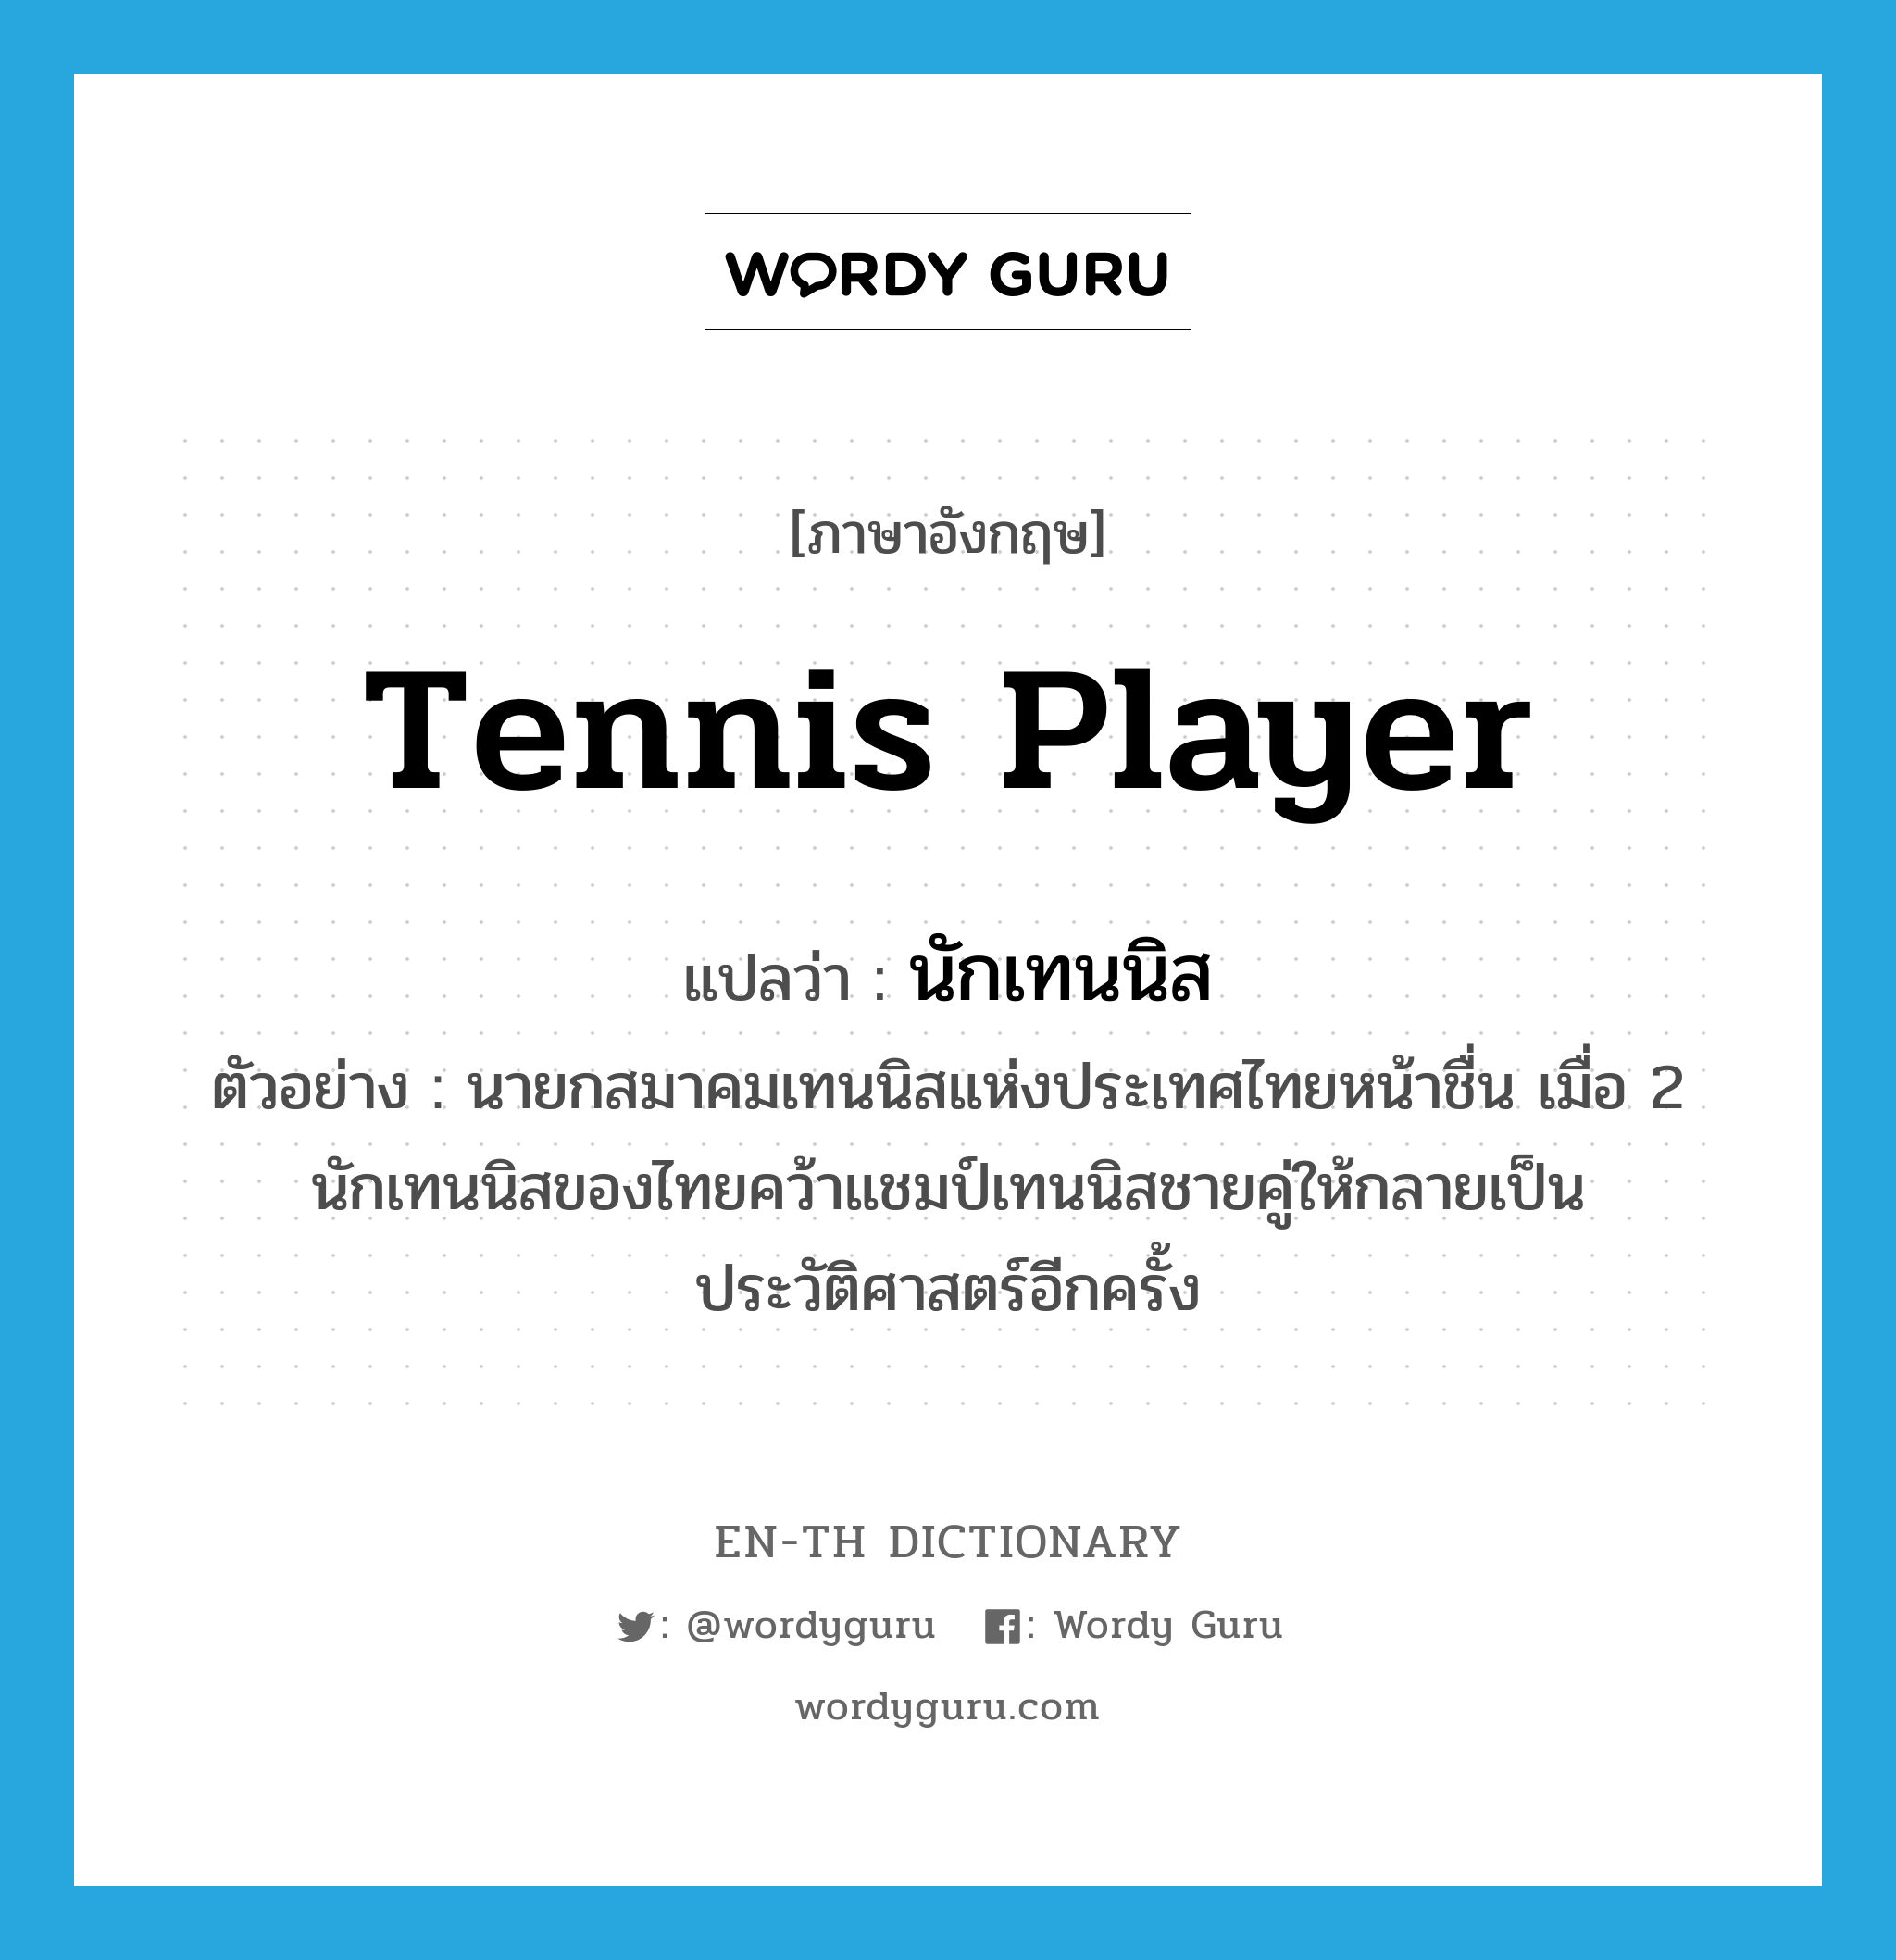 tennis player แปลว่า?, คำศัพท์ภาษาอังกฤษ tennis player แปลว่า นักเทนนิส ประเภท N ตัวอย่าง นายกสมาคมเทนนิสแห่งประเทศไทยหน้าชื่น เมื่อ 2 นักเทนนิสของไทยคว้าแชมป์เทนนิสชายคู่ให้กลายเป็นประวัติศาสตร์อีกครั้ง หมวด N